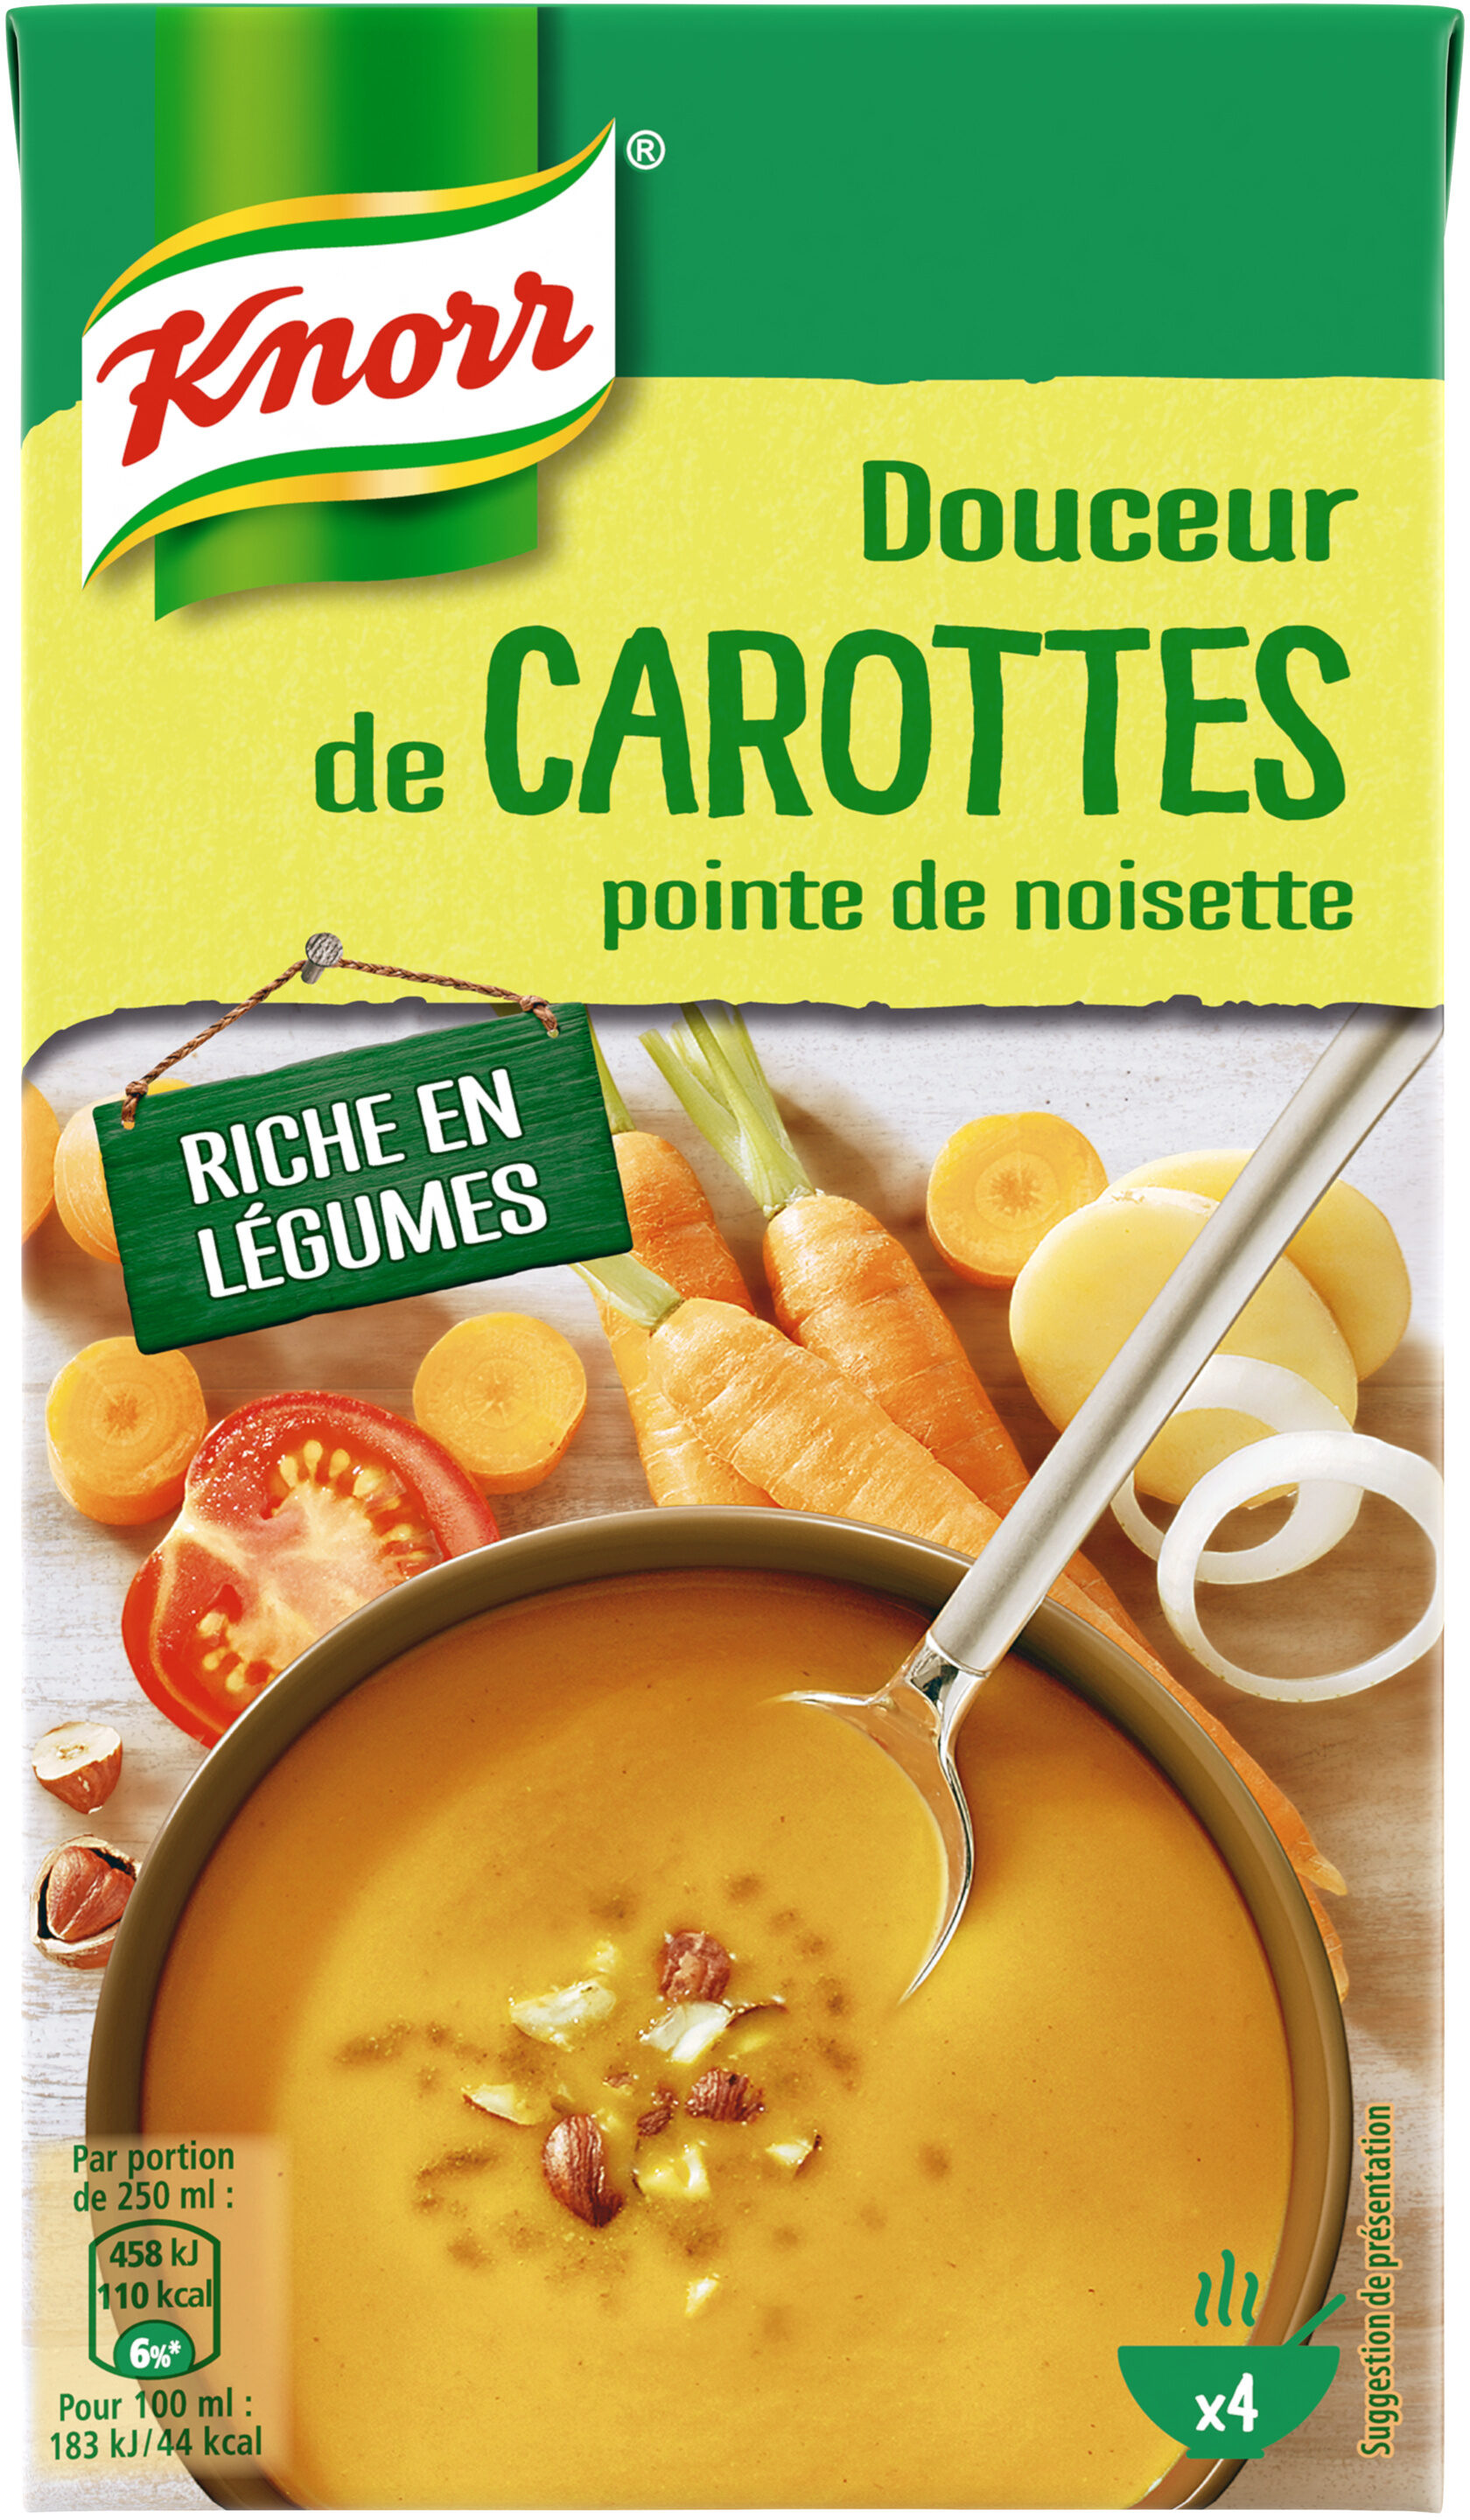 Knorr Soupe Liquide Douceur de Carottes Pointe de Noisette Brique 4 Portions 1L - Produit